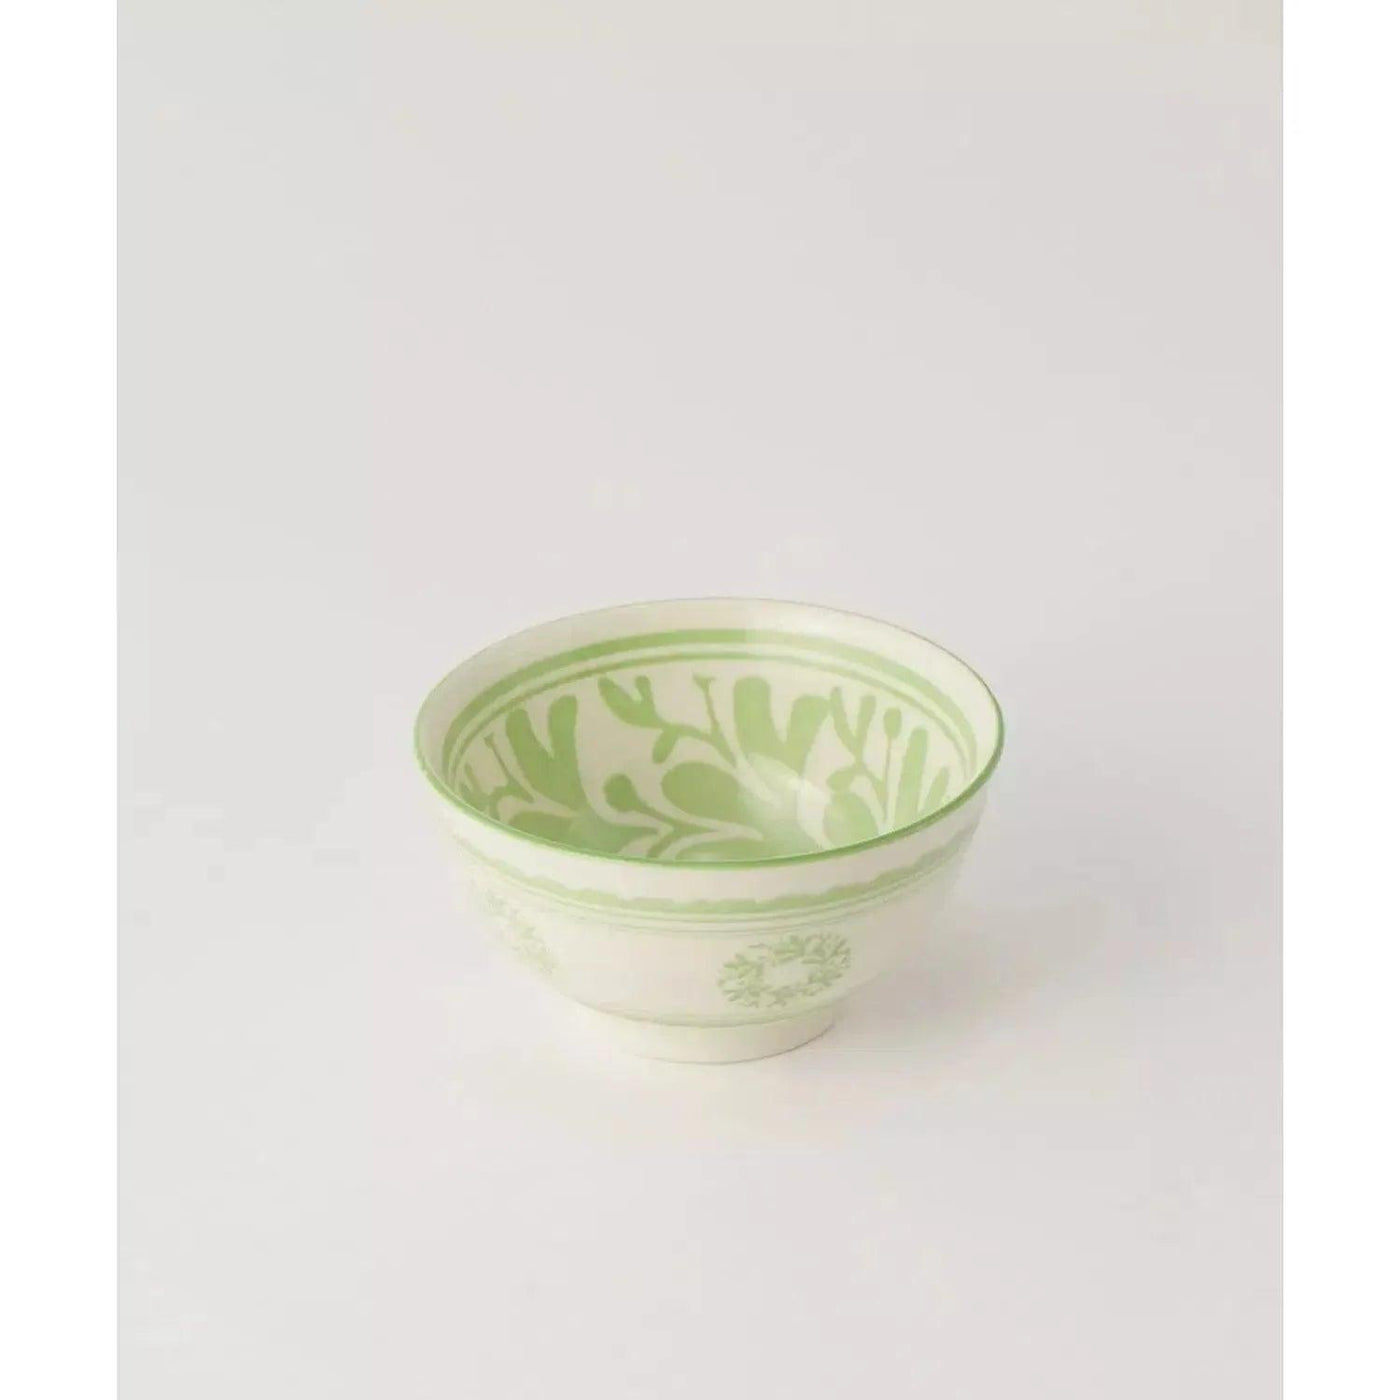 Souq Bowl de Ceramica Belvedere